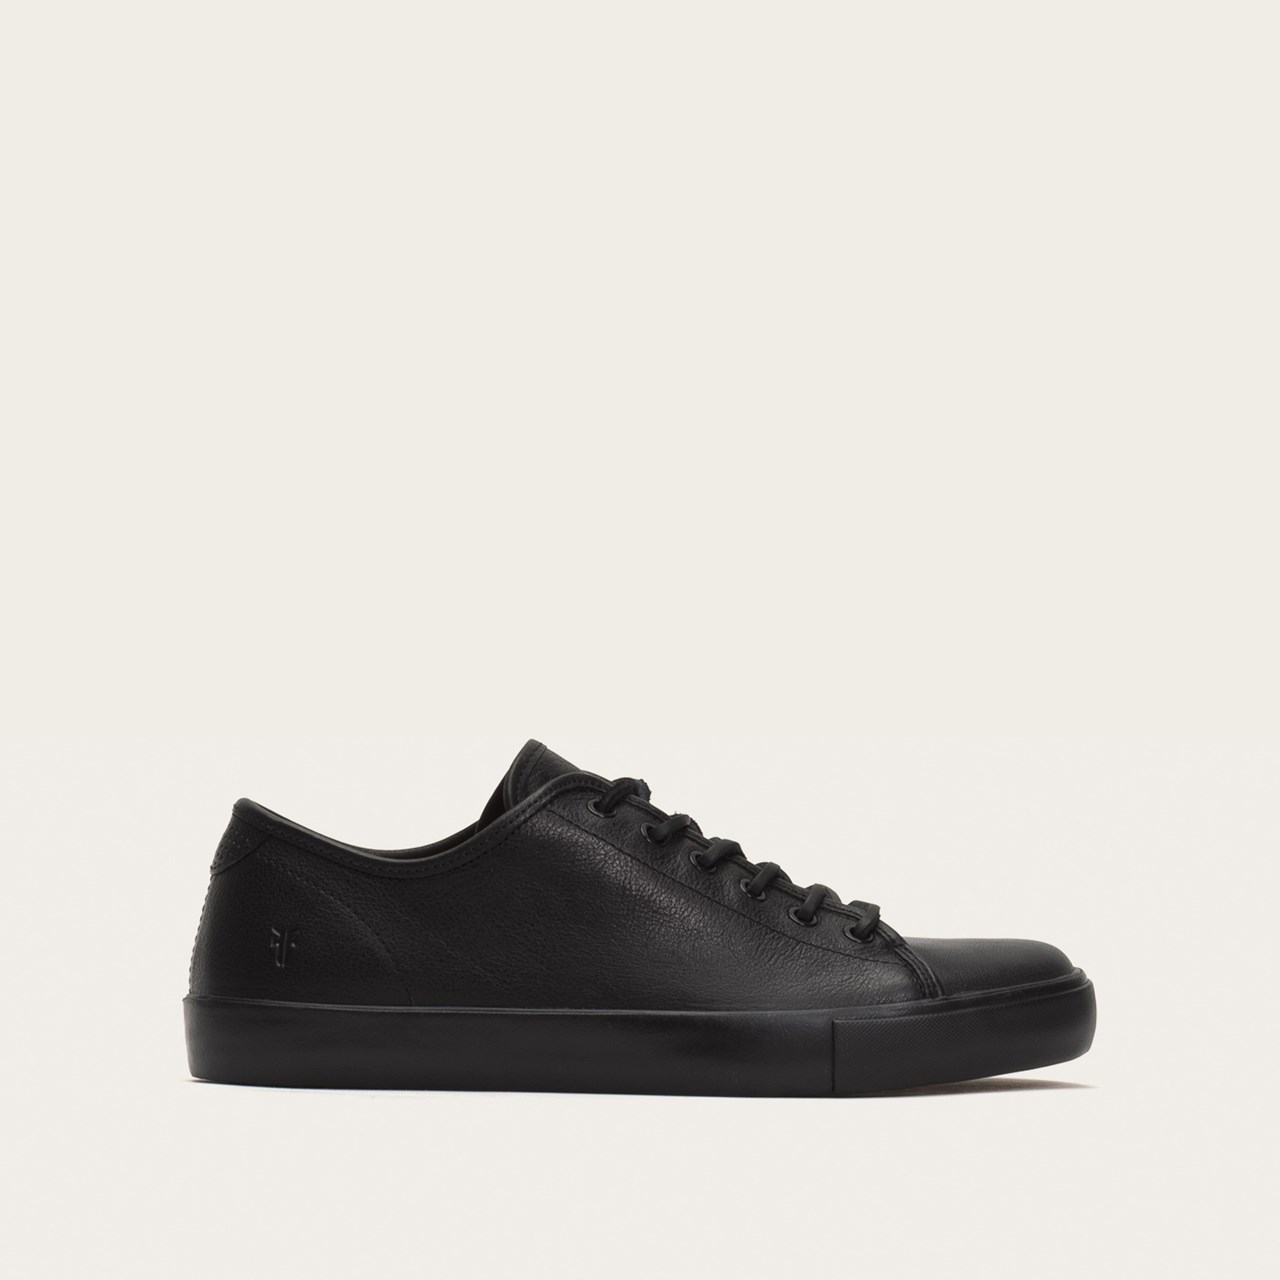 Frye Brett Low Leather sneakers - black.jpg